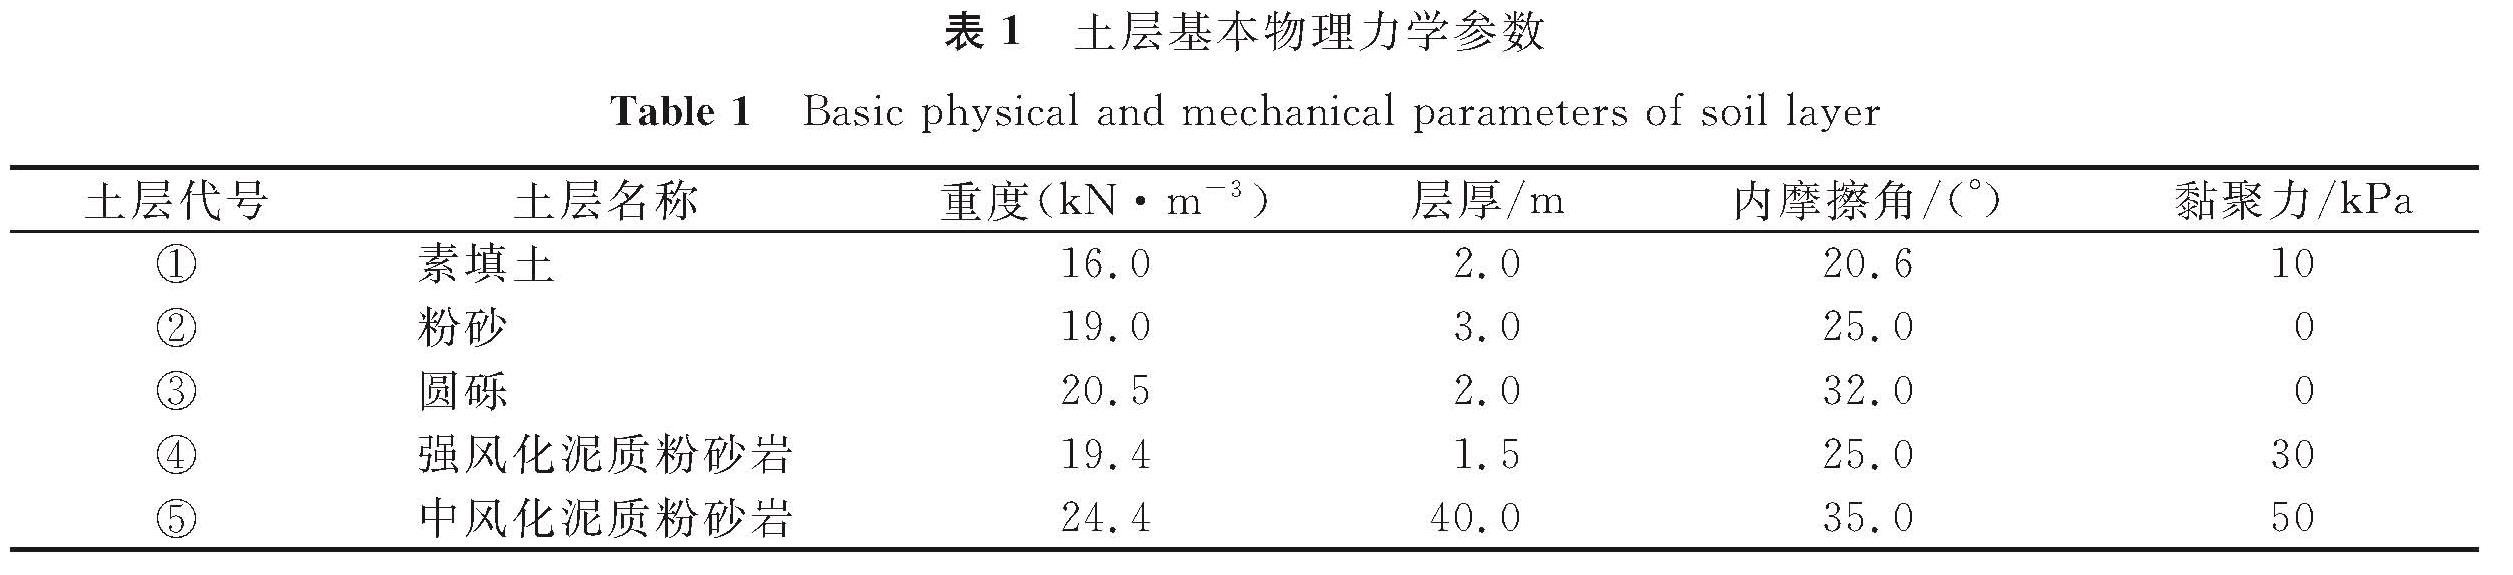 表1 土层基本物理力学参数<br/>Table 1 Basic physical and mechanical parameters of soil layer